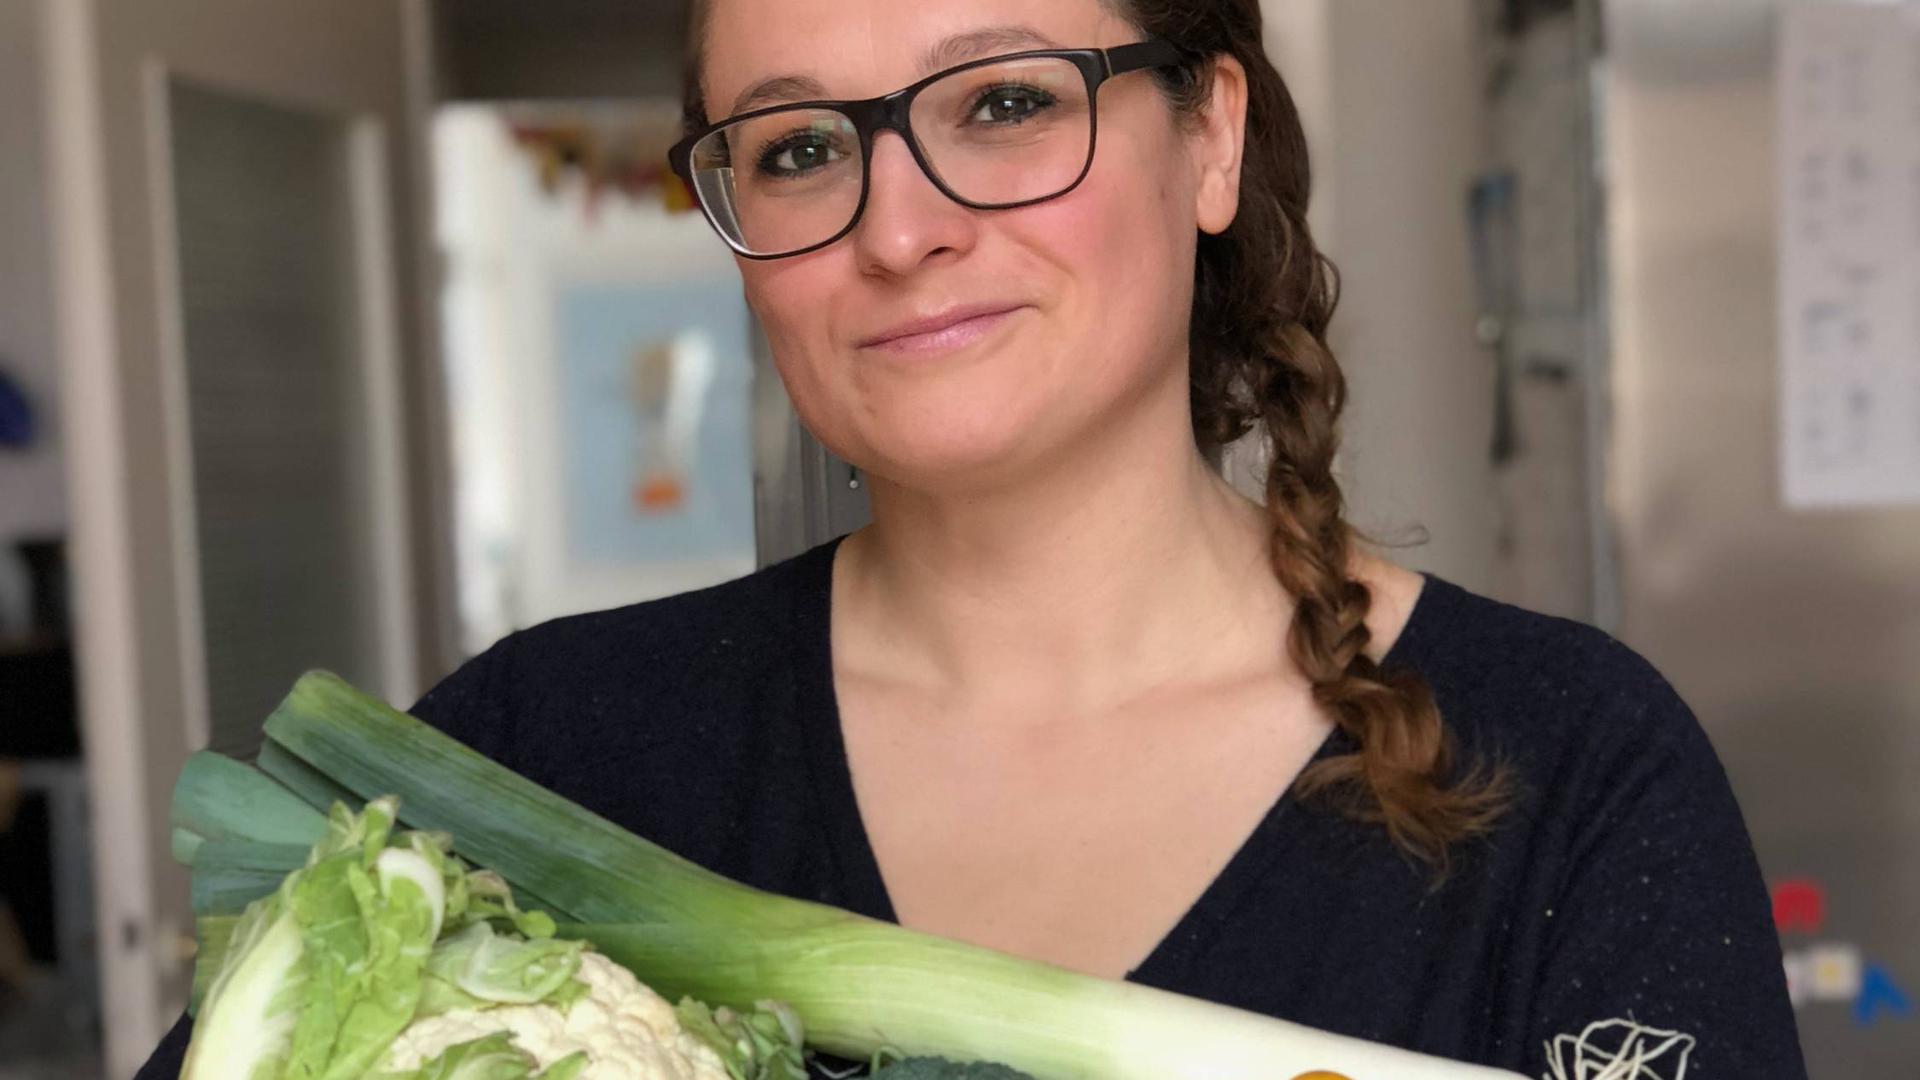 IMMER HER MIT DEM GEMÜSE: Unsere Redakteurin Martha Steinfeld versuchte sich zwei Monate lang an einer veganen Ernährung.